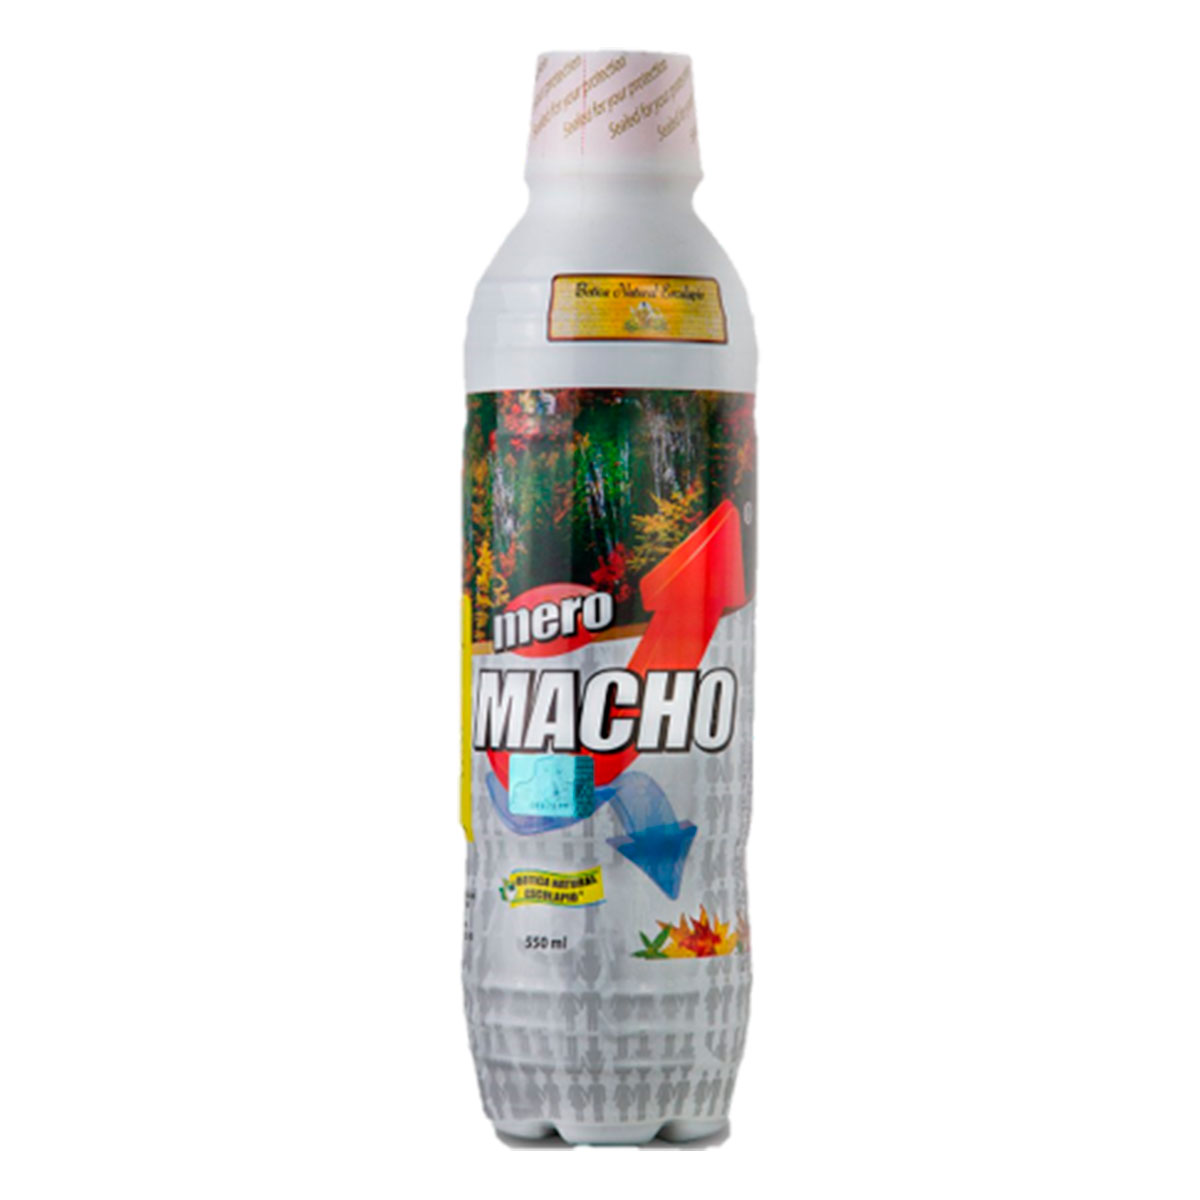 Mero Macho Ecuatoriano - Beverages - Lowell, Massachusetts